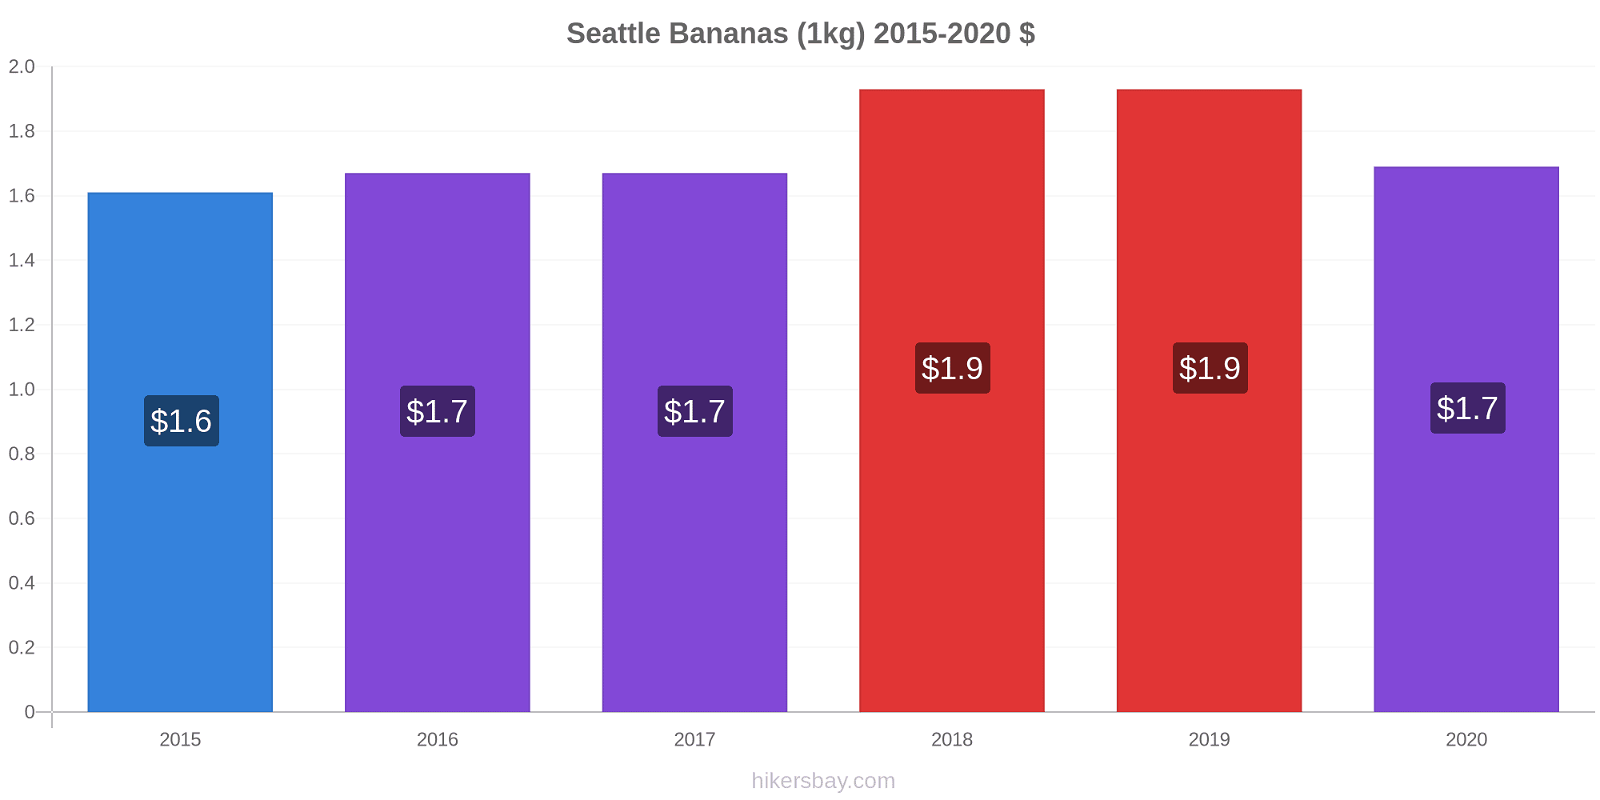 Seattle variação de preço Banana (1kg) hikersbay.com